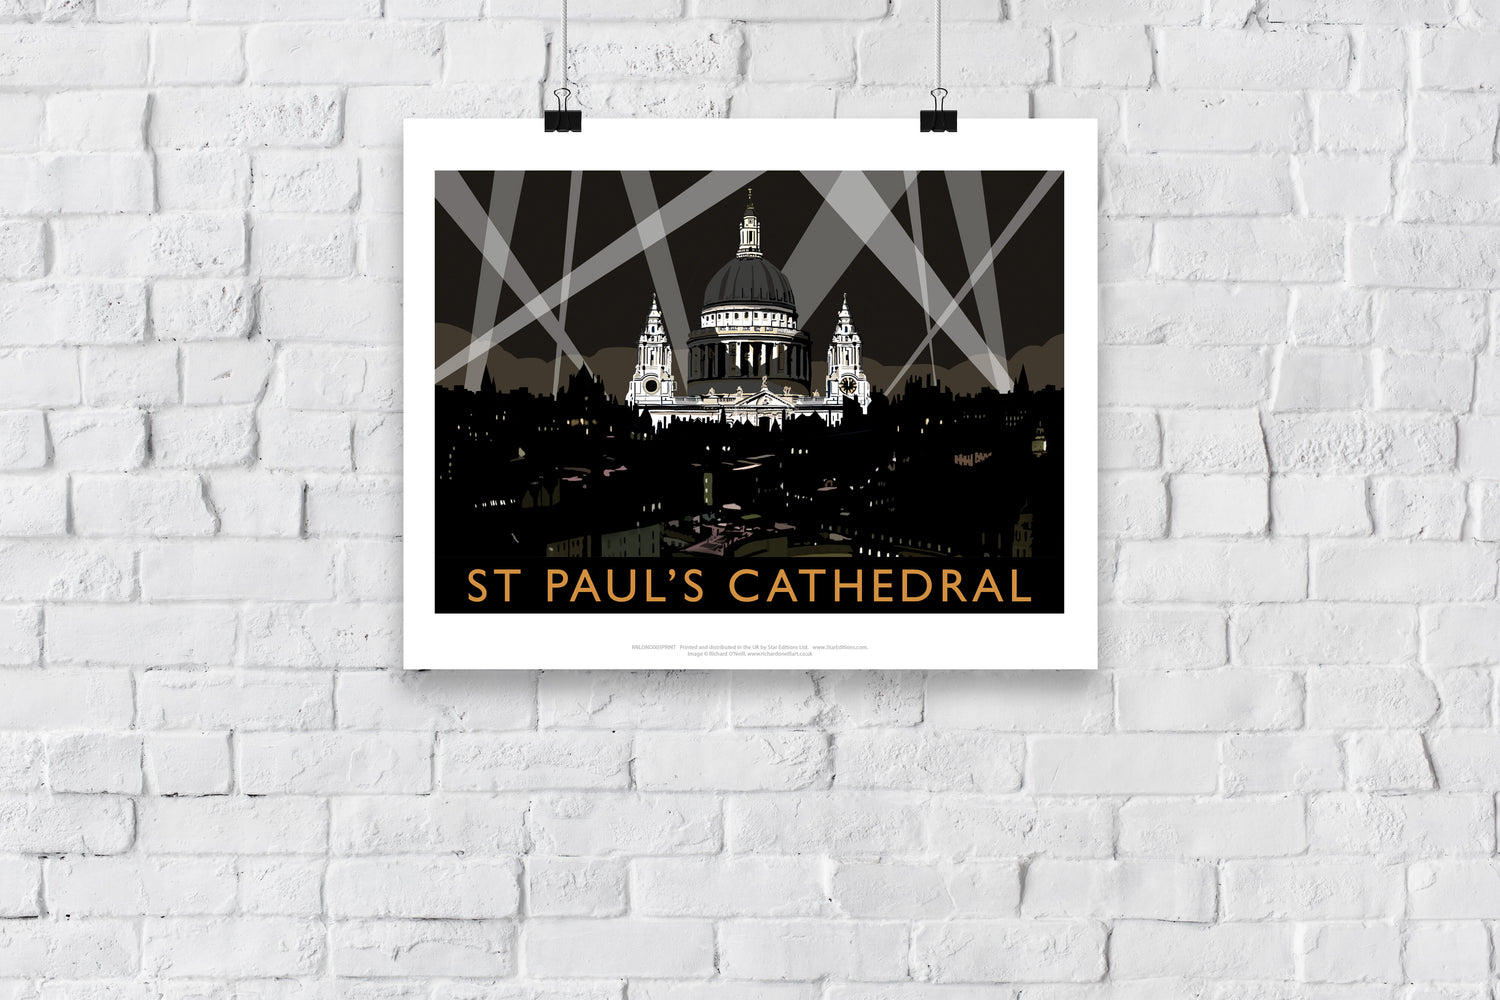 St Pauls Cathedral at Night, London - Art Print